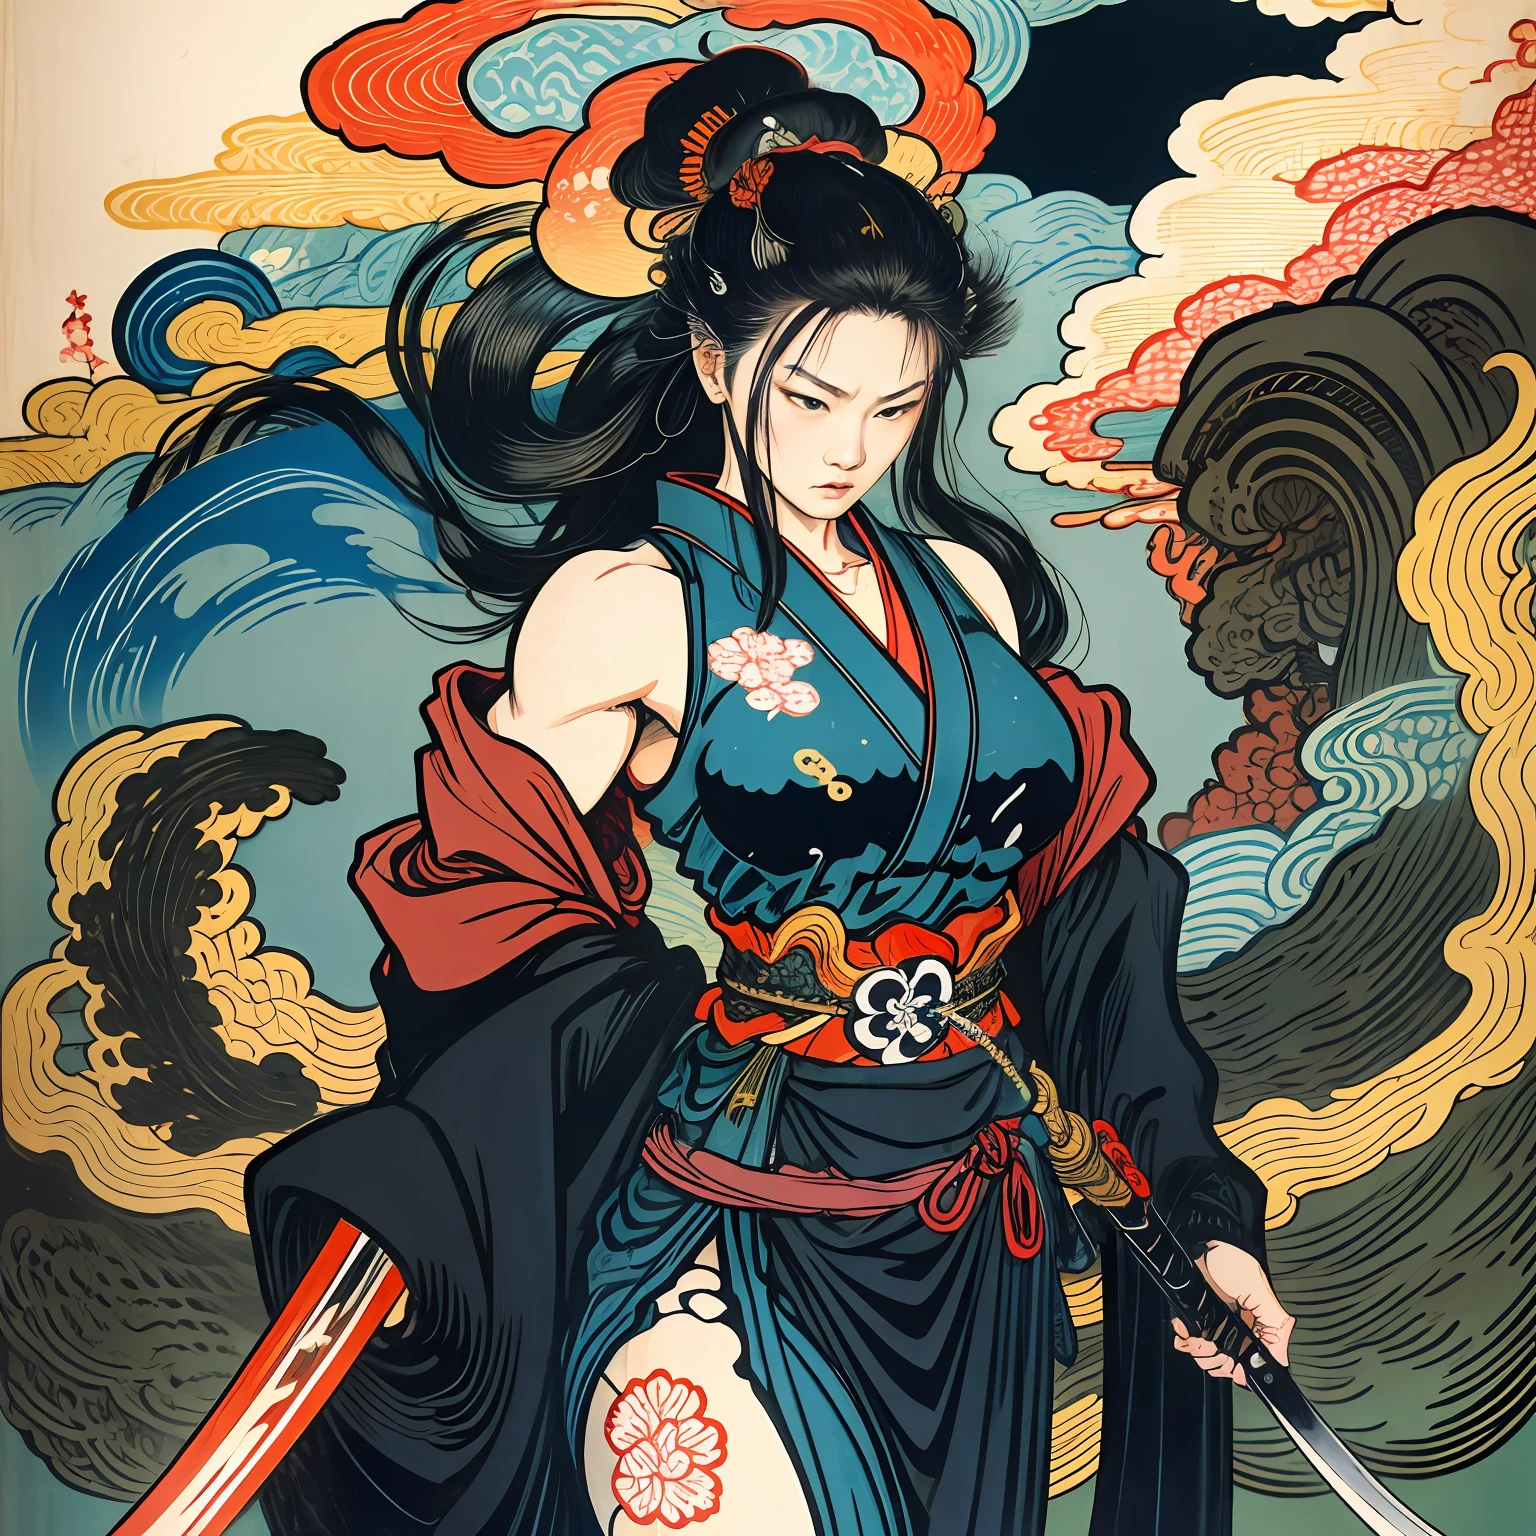 Это роспись всего тела натуральными цветами с линейными рисунками в стиле Кацусика Хокусай.. Мечница стройная и мускулистая.. Женщины-самураи Японии. С достойным, но женственным выражением решимости, она противостоит злым духам. у нее длинные черные волосы. Верхняя часть ее тела покрыта черным кимоно, а хакама длиной до колен.. В правой руке она держит японский меч с более длинной частью.. в высочайшем качестве, Шедевр высокого разрешения в стиле укиё-э, молния и клубящееся пламя. Среди них, женщина-самурай стоит с прямой спиной, лицом вперед.